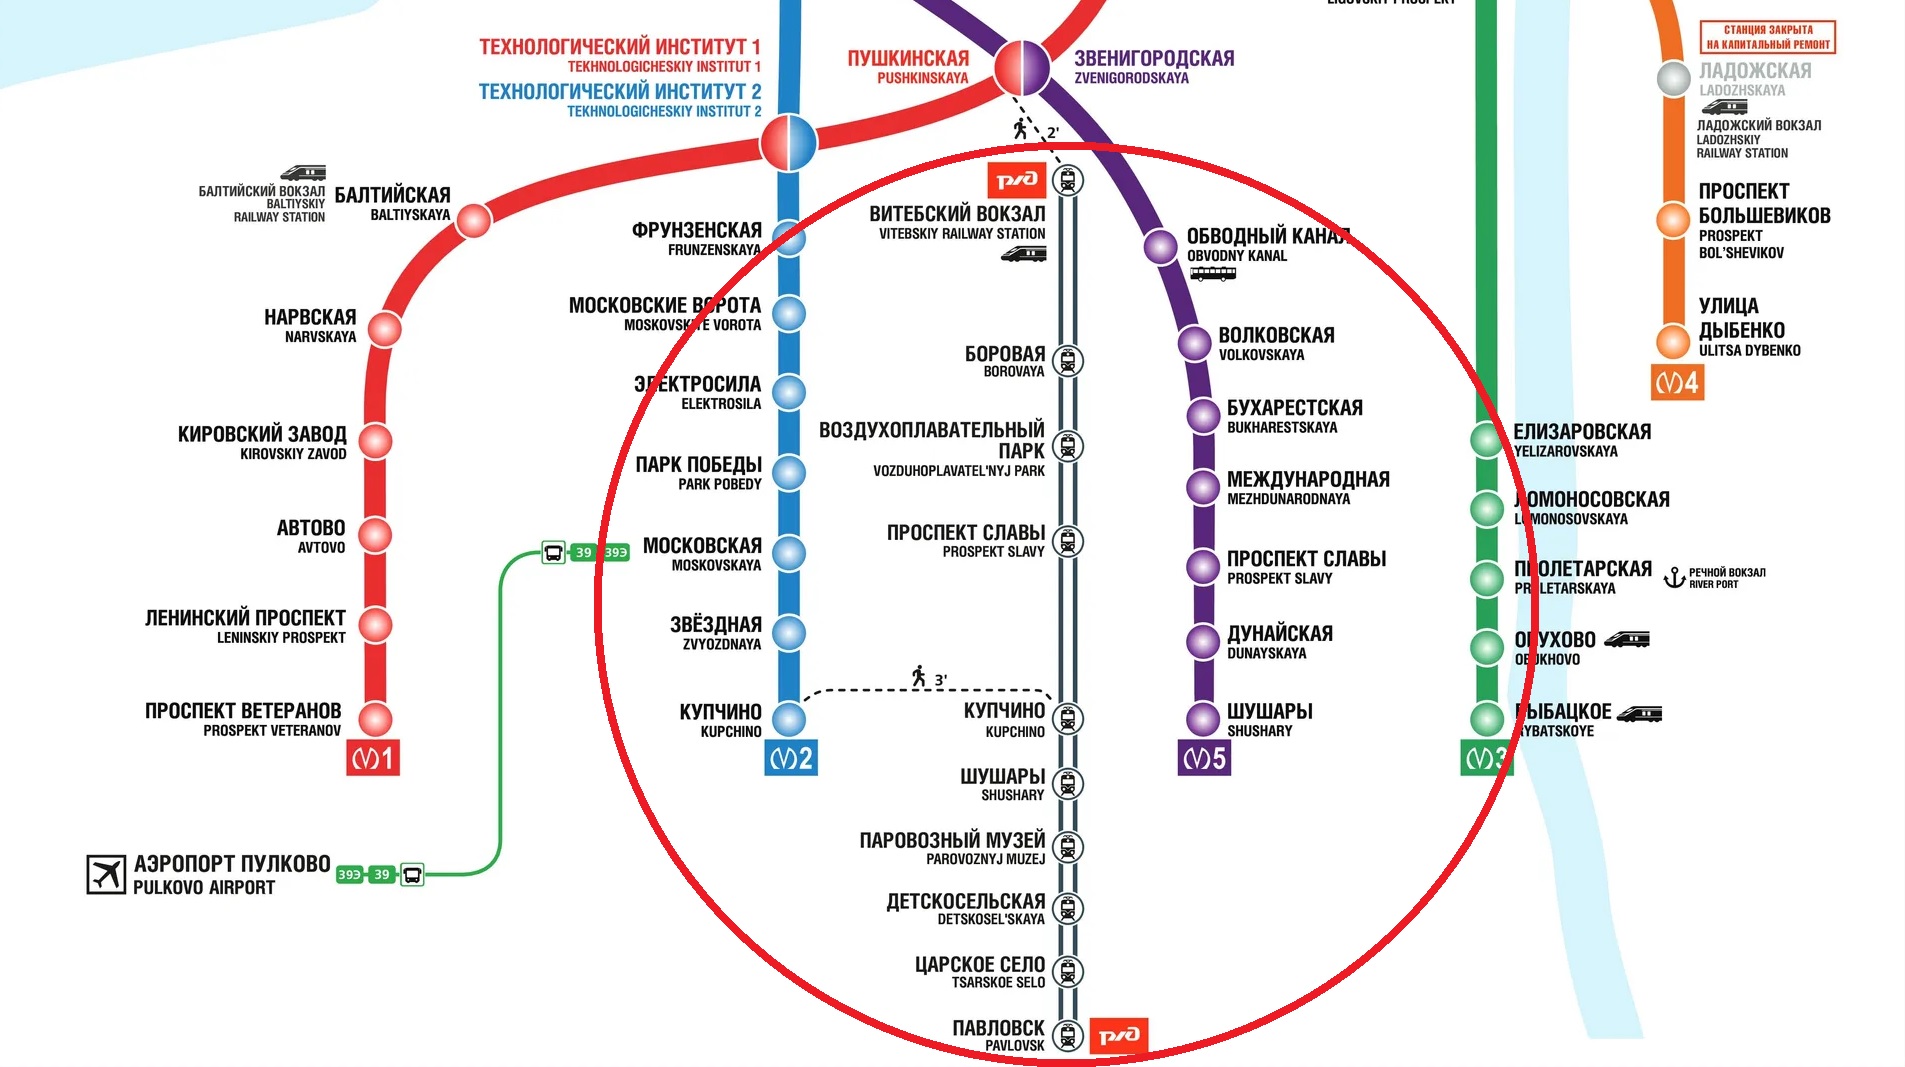 метро санкт петербурга карта 2022